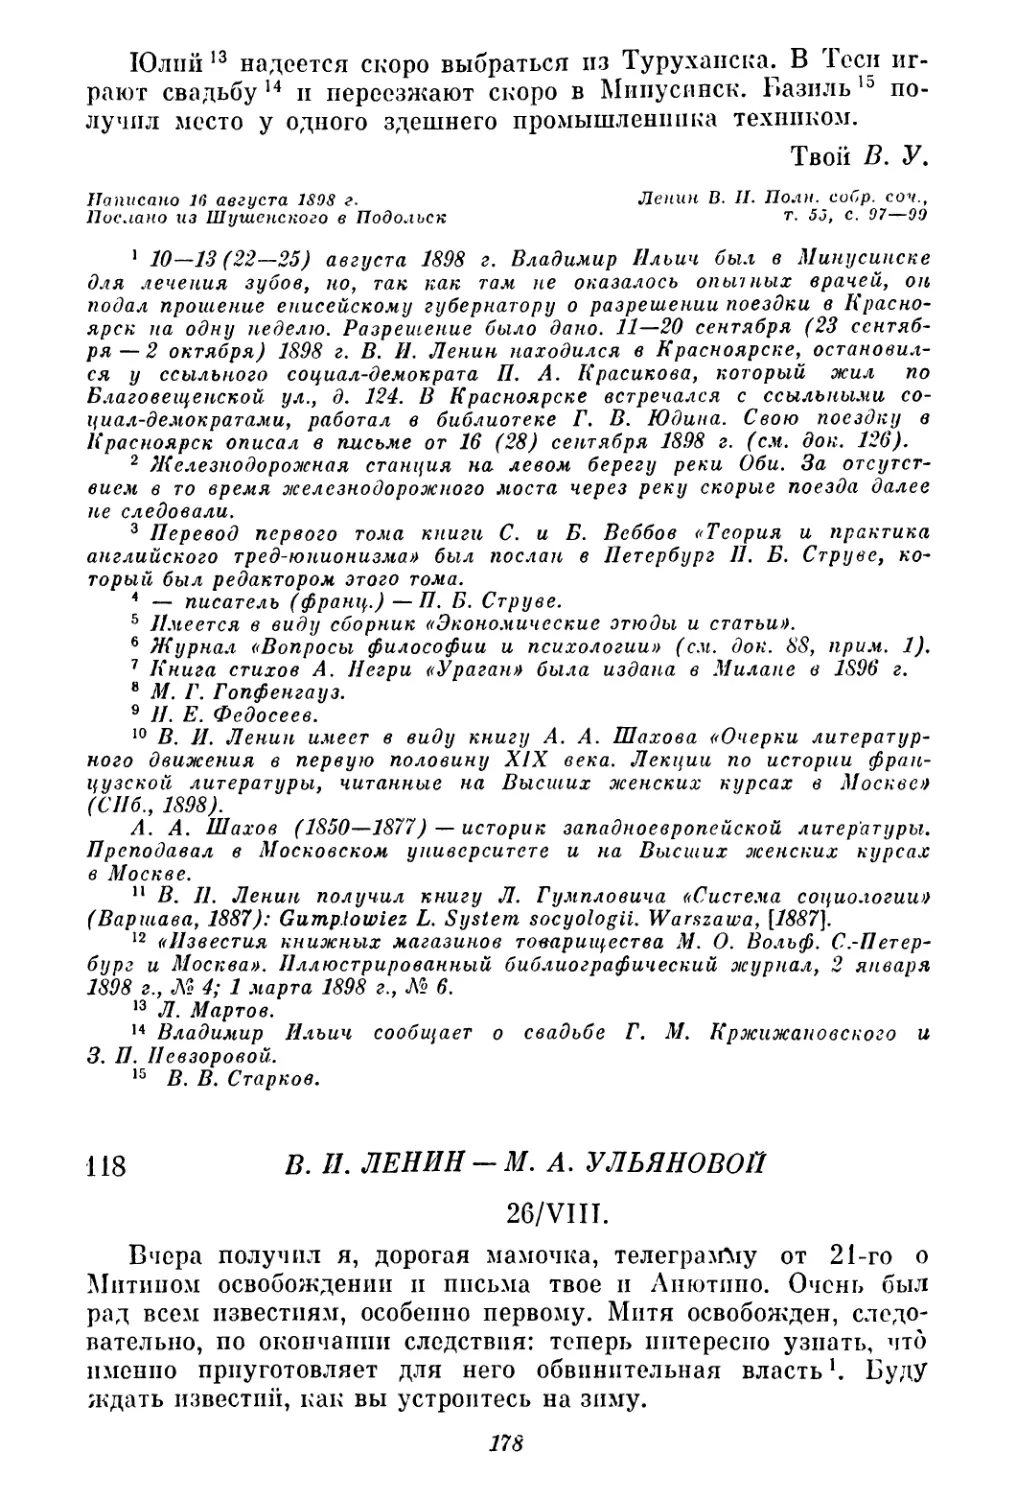 118. В. И. Ленин — М. А. Ульяновой. 26 августа